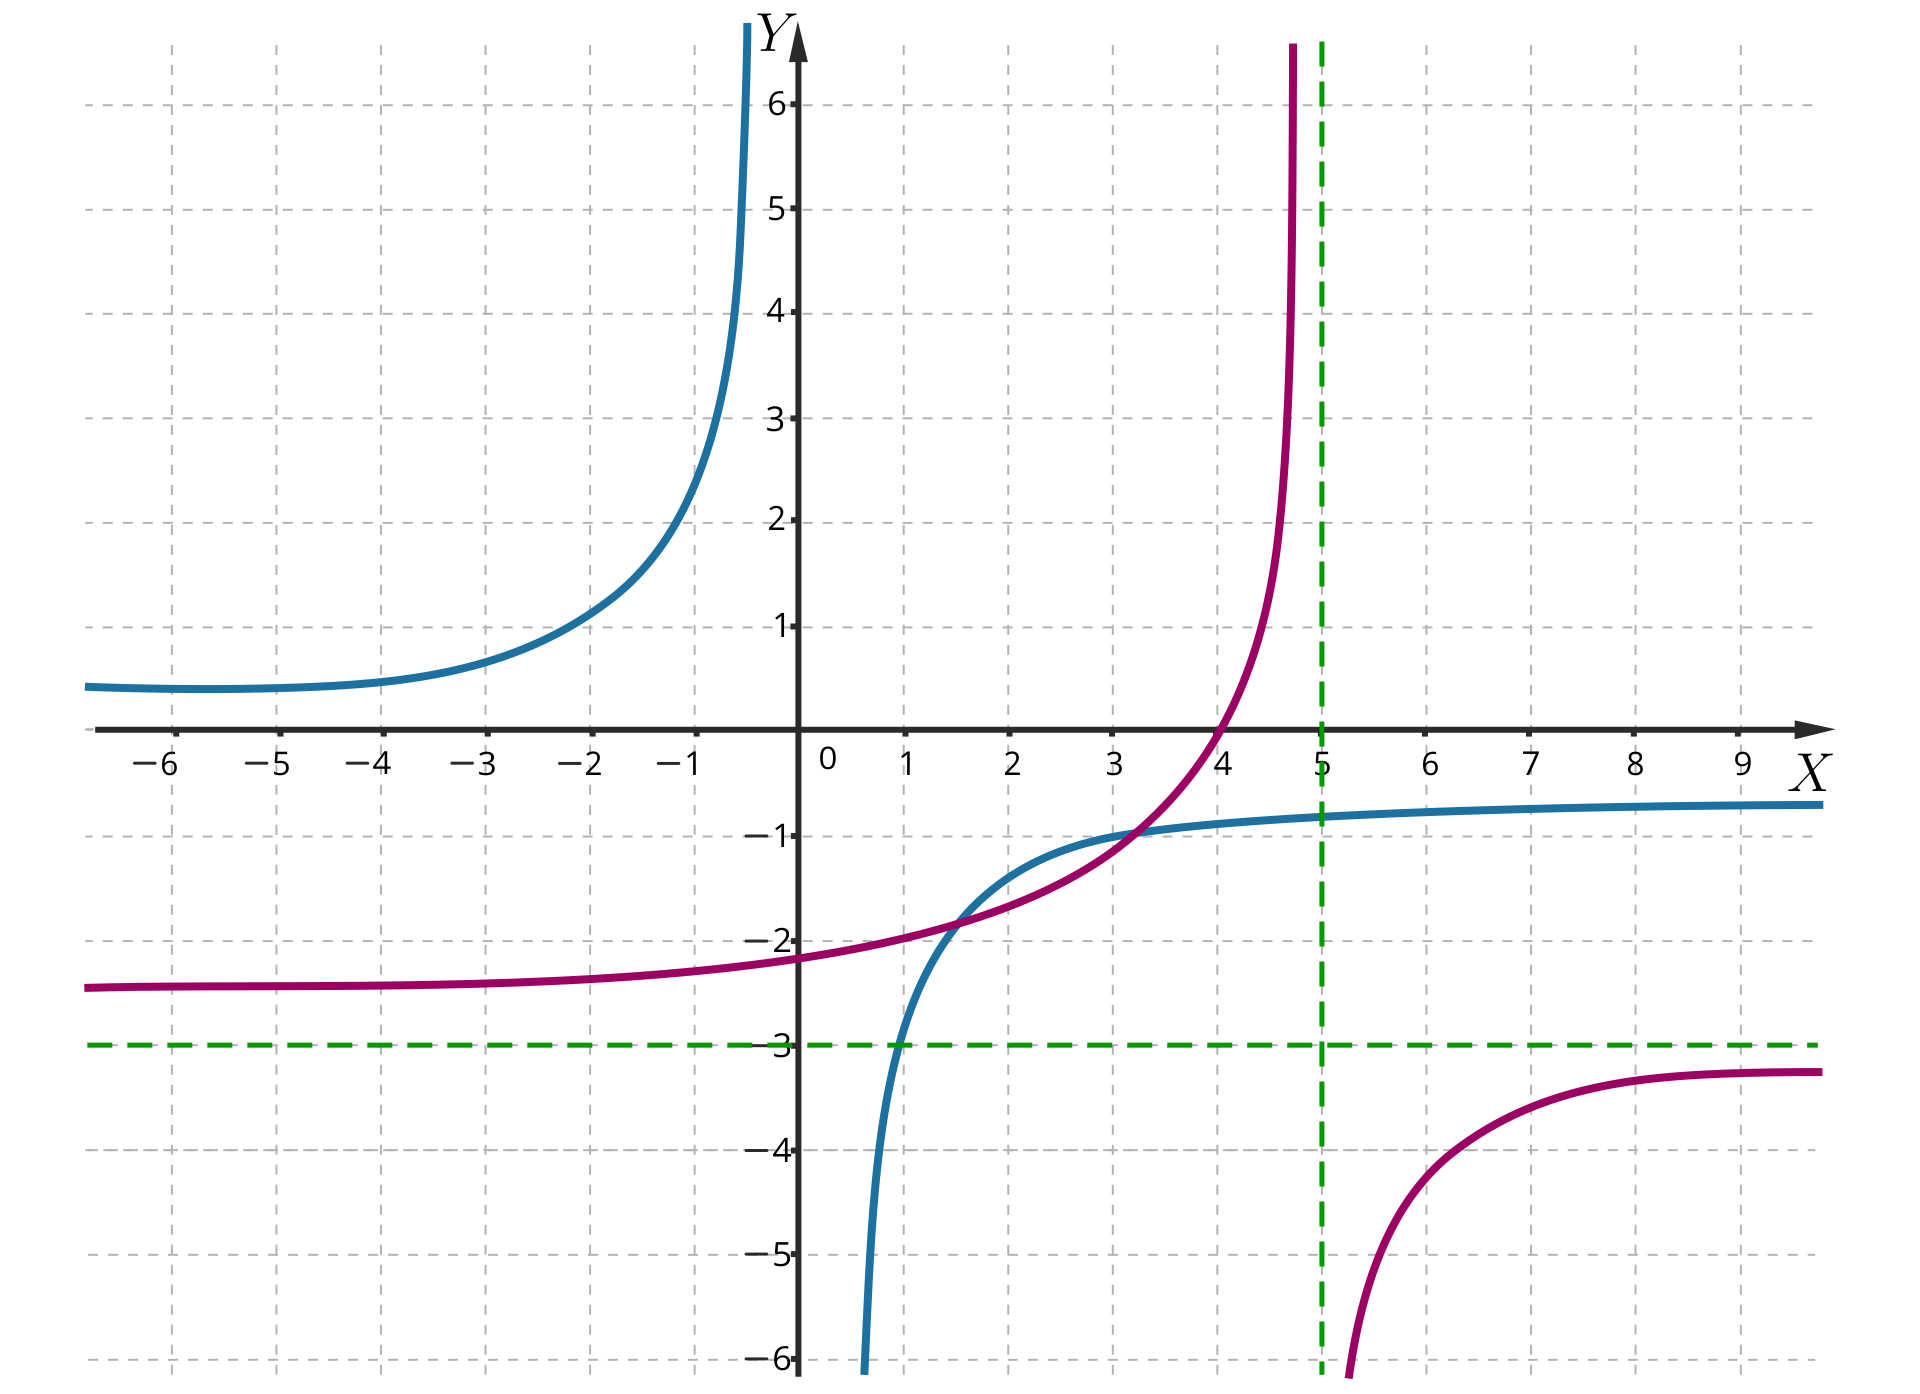 Na ilustracji znajduje się układ współrzędnych z zaznaczonymi dwoma wykresami funkcji. Pierwszy wykres to wykres funkcji g od x równa się początek ułamka minus trzy, mianownik x koniec ułamka. Jest to hiperbola, znajdująca się w drugiej i czwartej ćwiartce układu, która posiada asymptotę pionową o równaniu x=0 oraz asymptotę poziomą o równaniu y=0. Drugi wykres, to wykres funkcji fx=-3x-5-3. Jest to hiperbola o takim samym kształcie, która posiada asymptotę pionową o równaniu x=5 oraz asymptotę poziomą o równaniu y=-trzy. Wykres funkcji f jest przesunięty względem wykresu funkcji g o pięć jednostek w prawo i o trzy jednostki w dół.